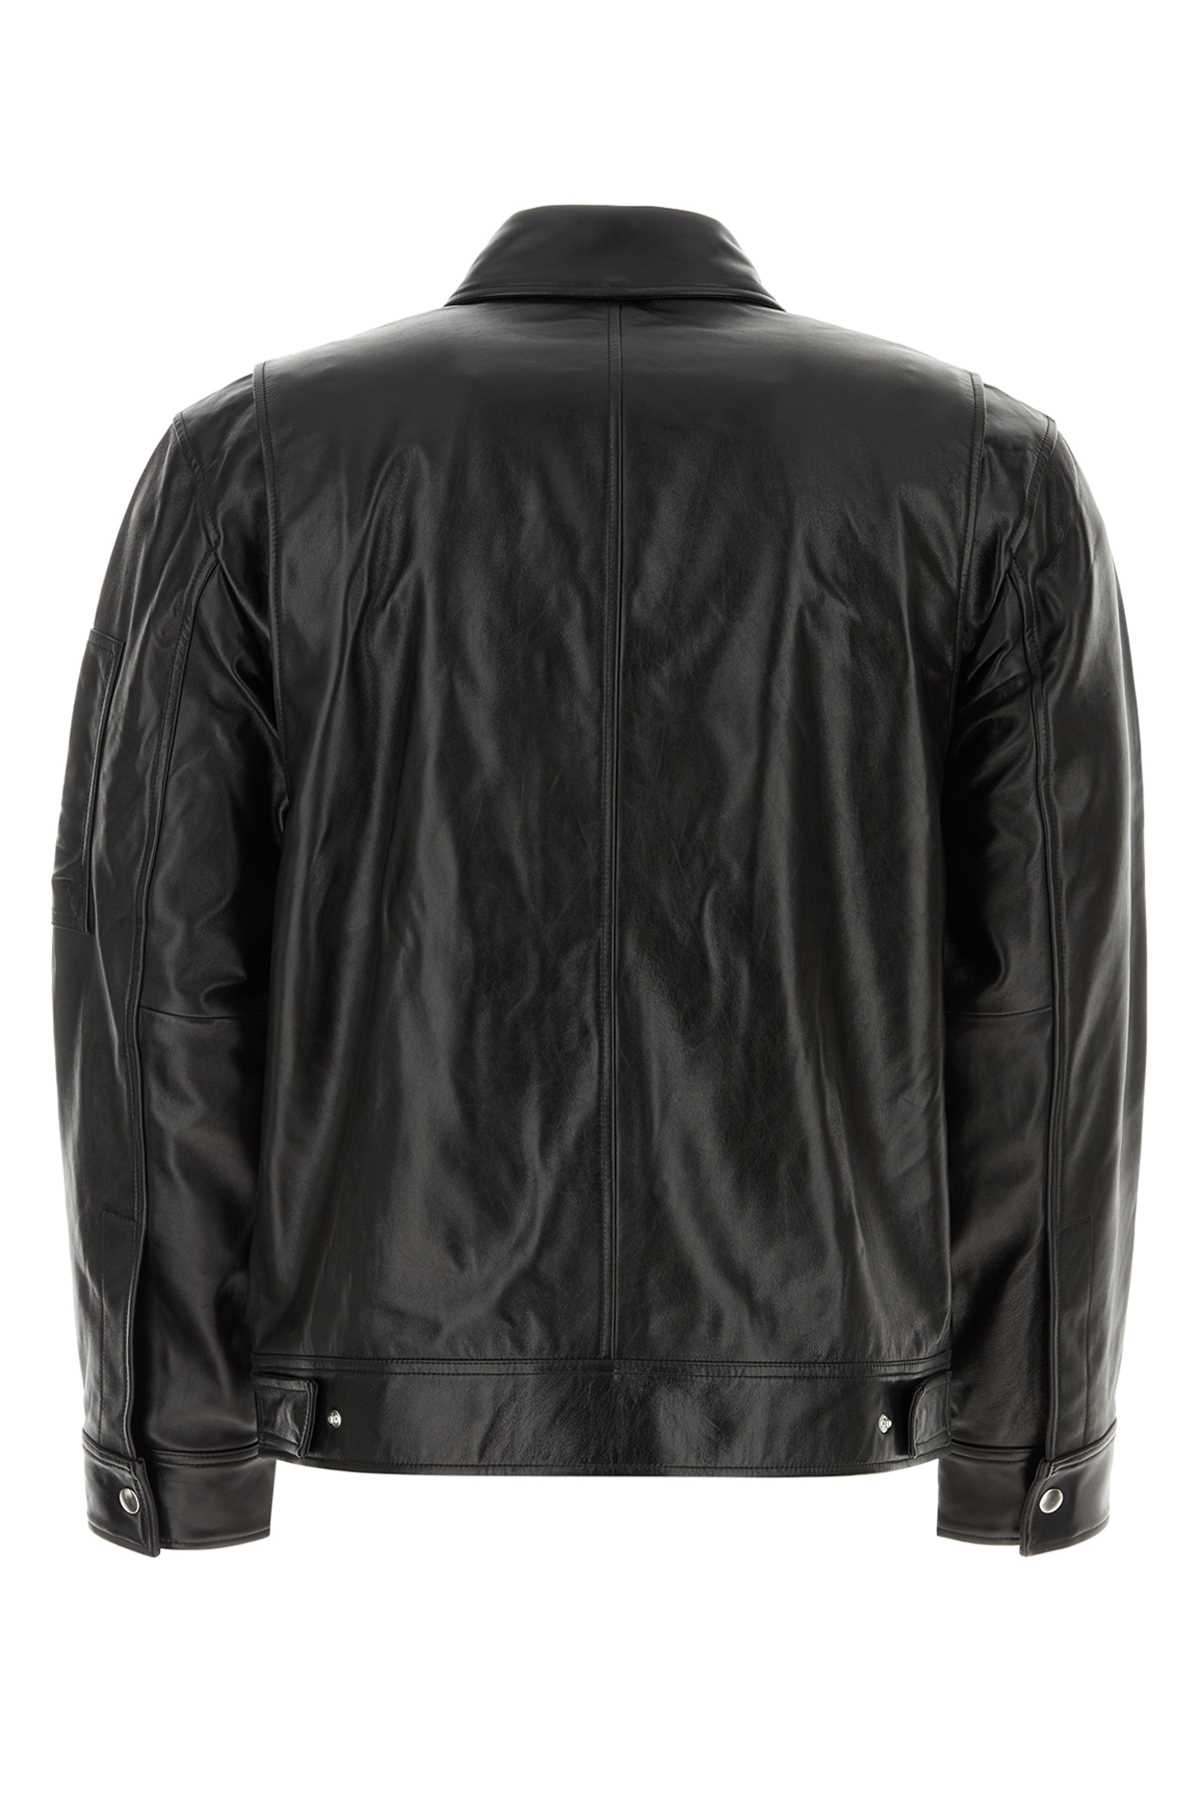 Shop Helmut Lang Black Leather Jacket